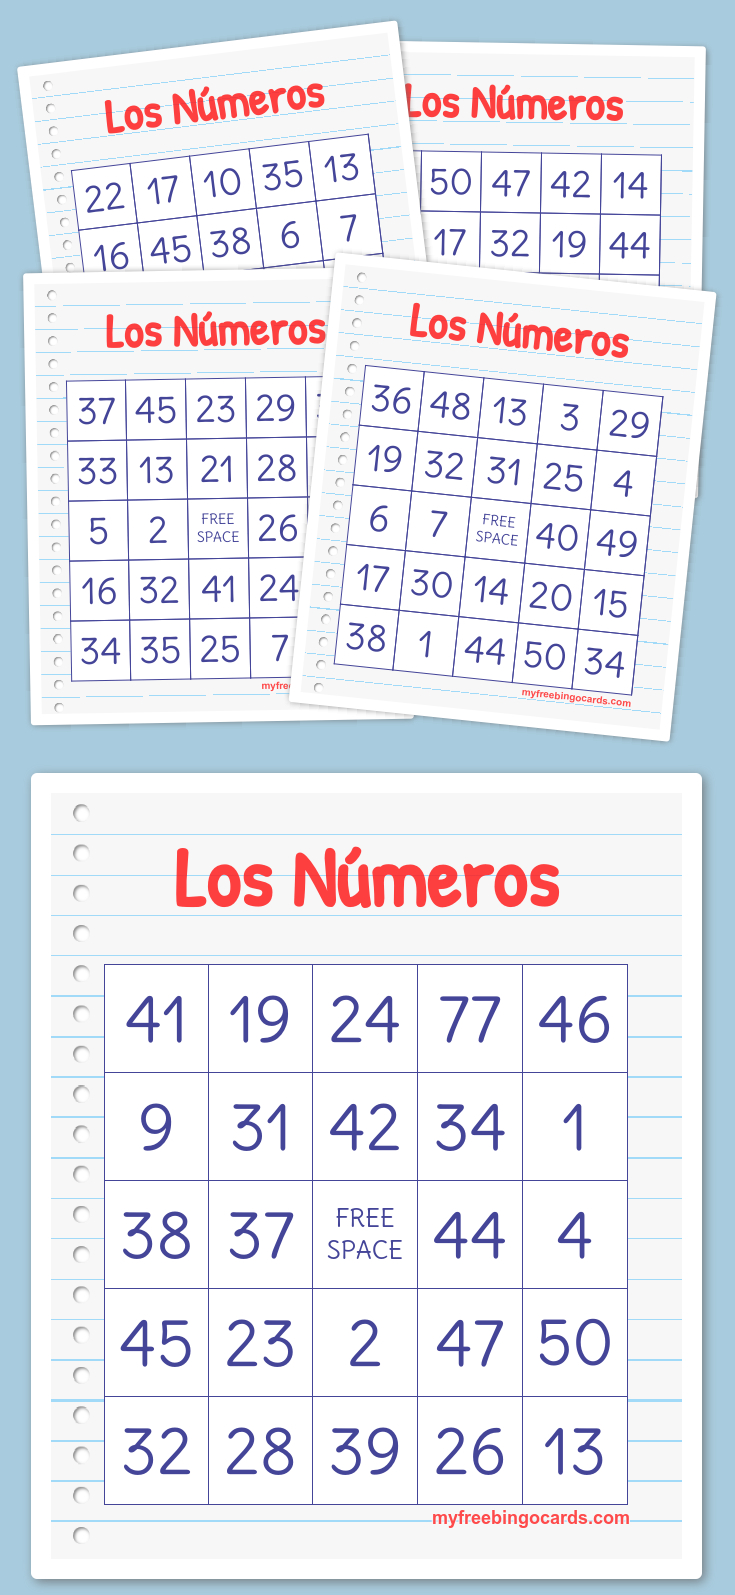 Los Números Bingo | Free Printable Bingo Cards, Bingo Cards